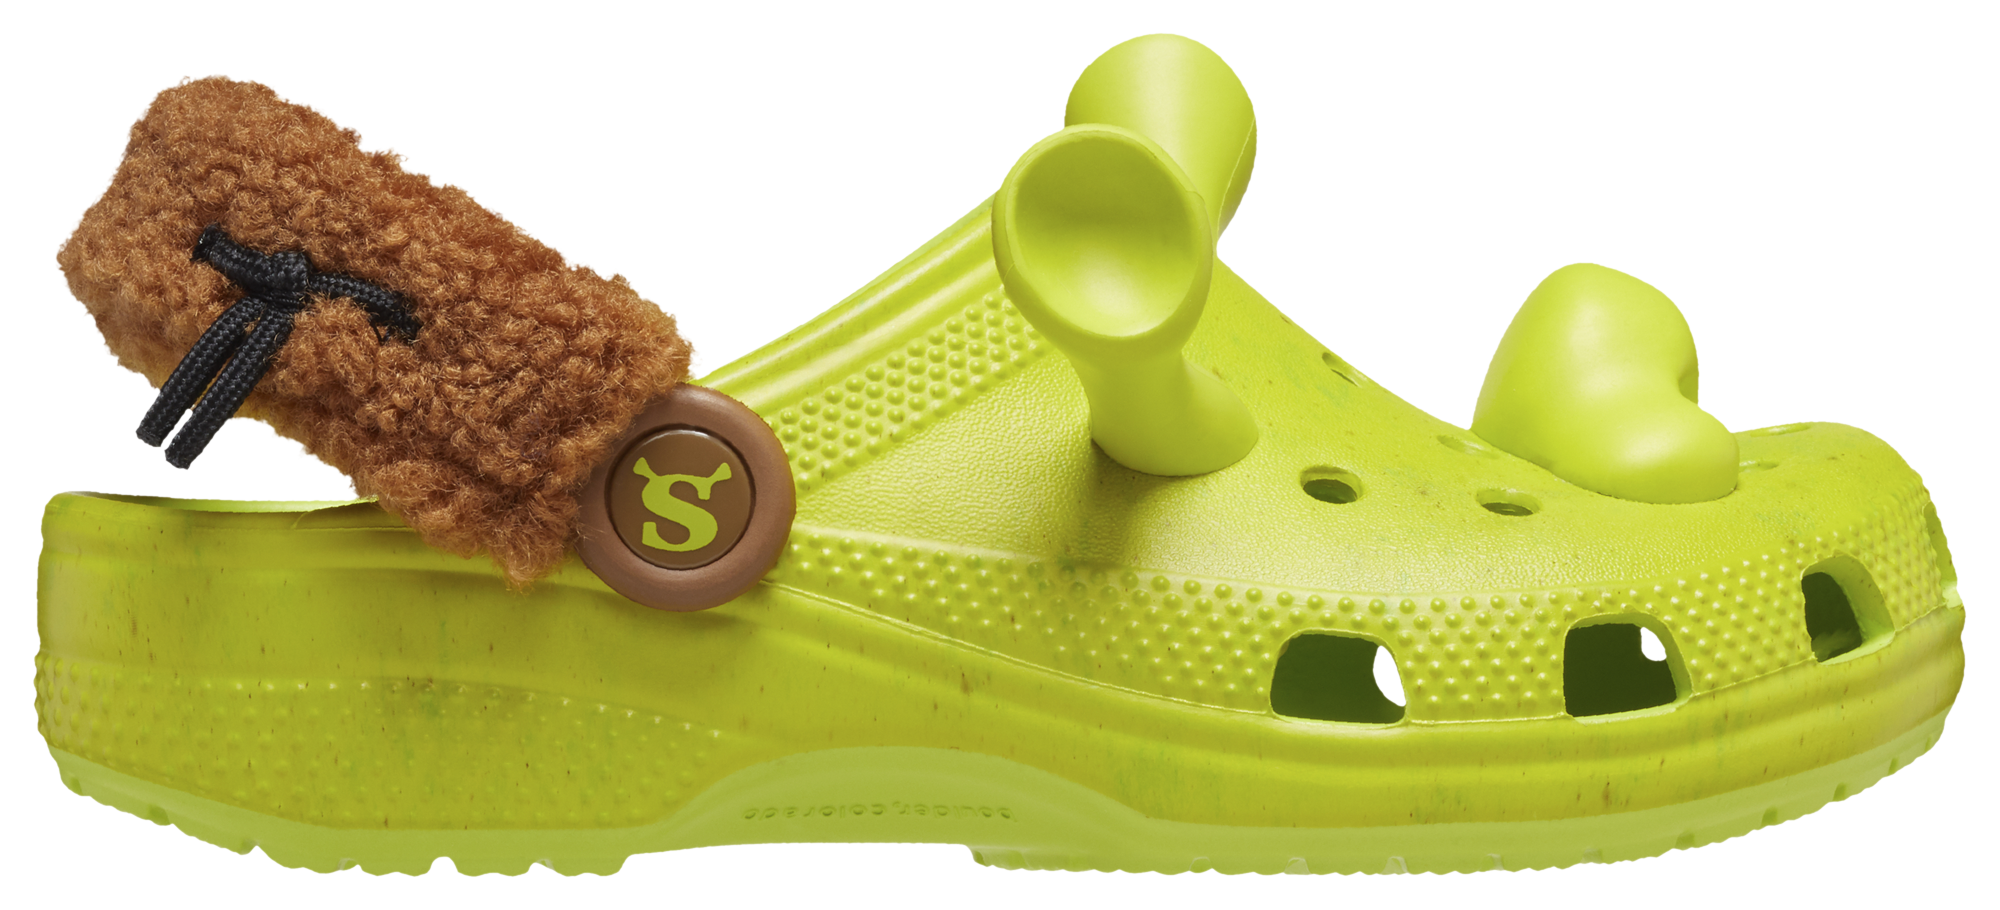 Crocs Classic DreamWorks Shrek Clog | Champs Sports